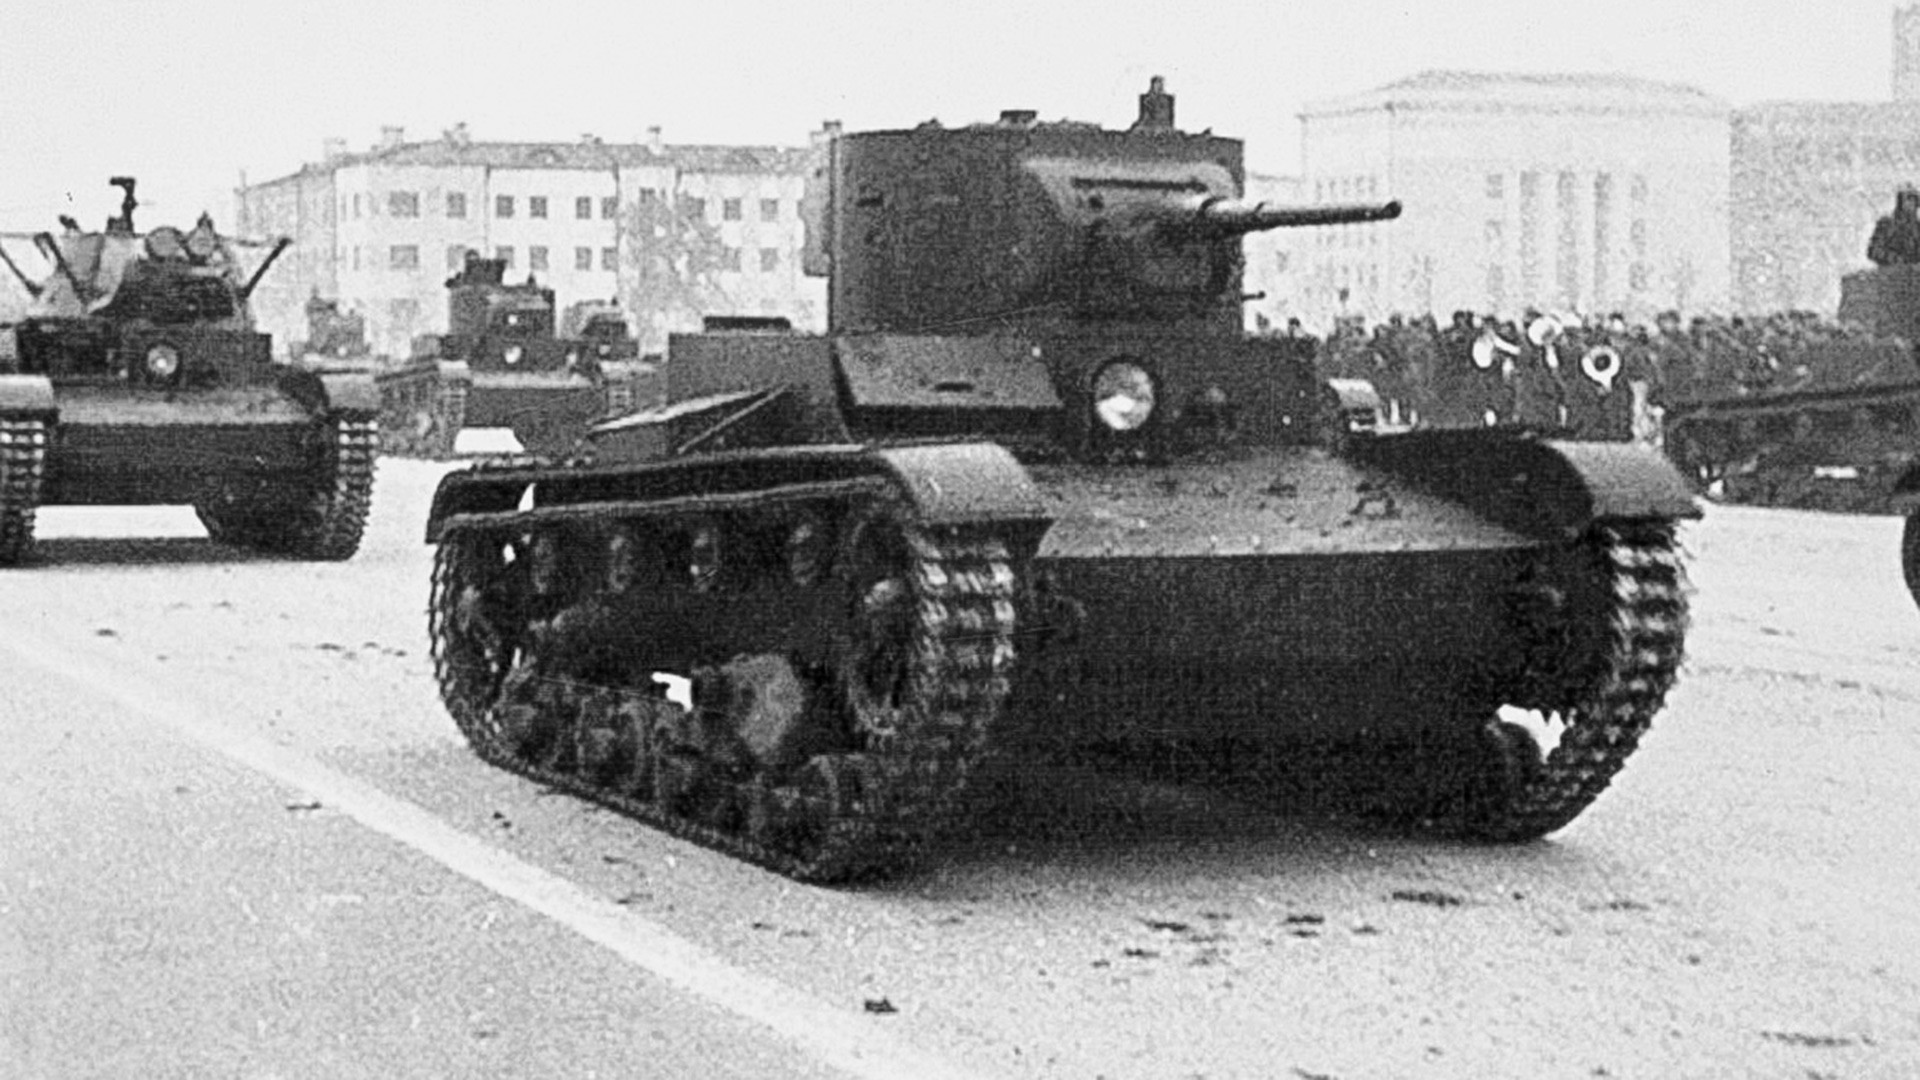 Laki pješadijski tenkovi T-26. Vojna parada u Kujbiševu 7. studenog 1941.
